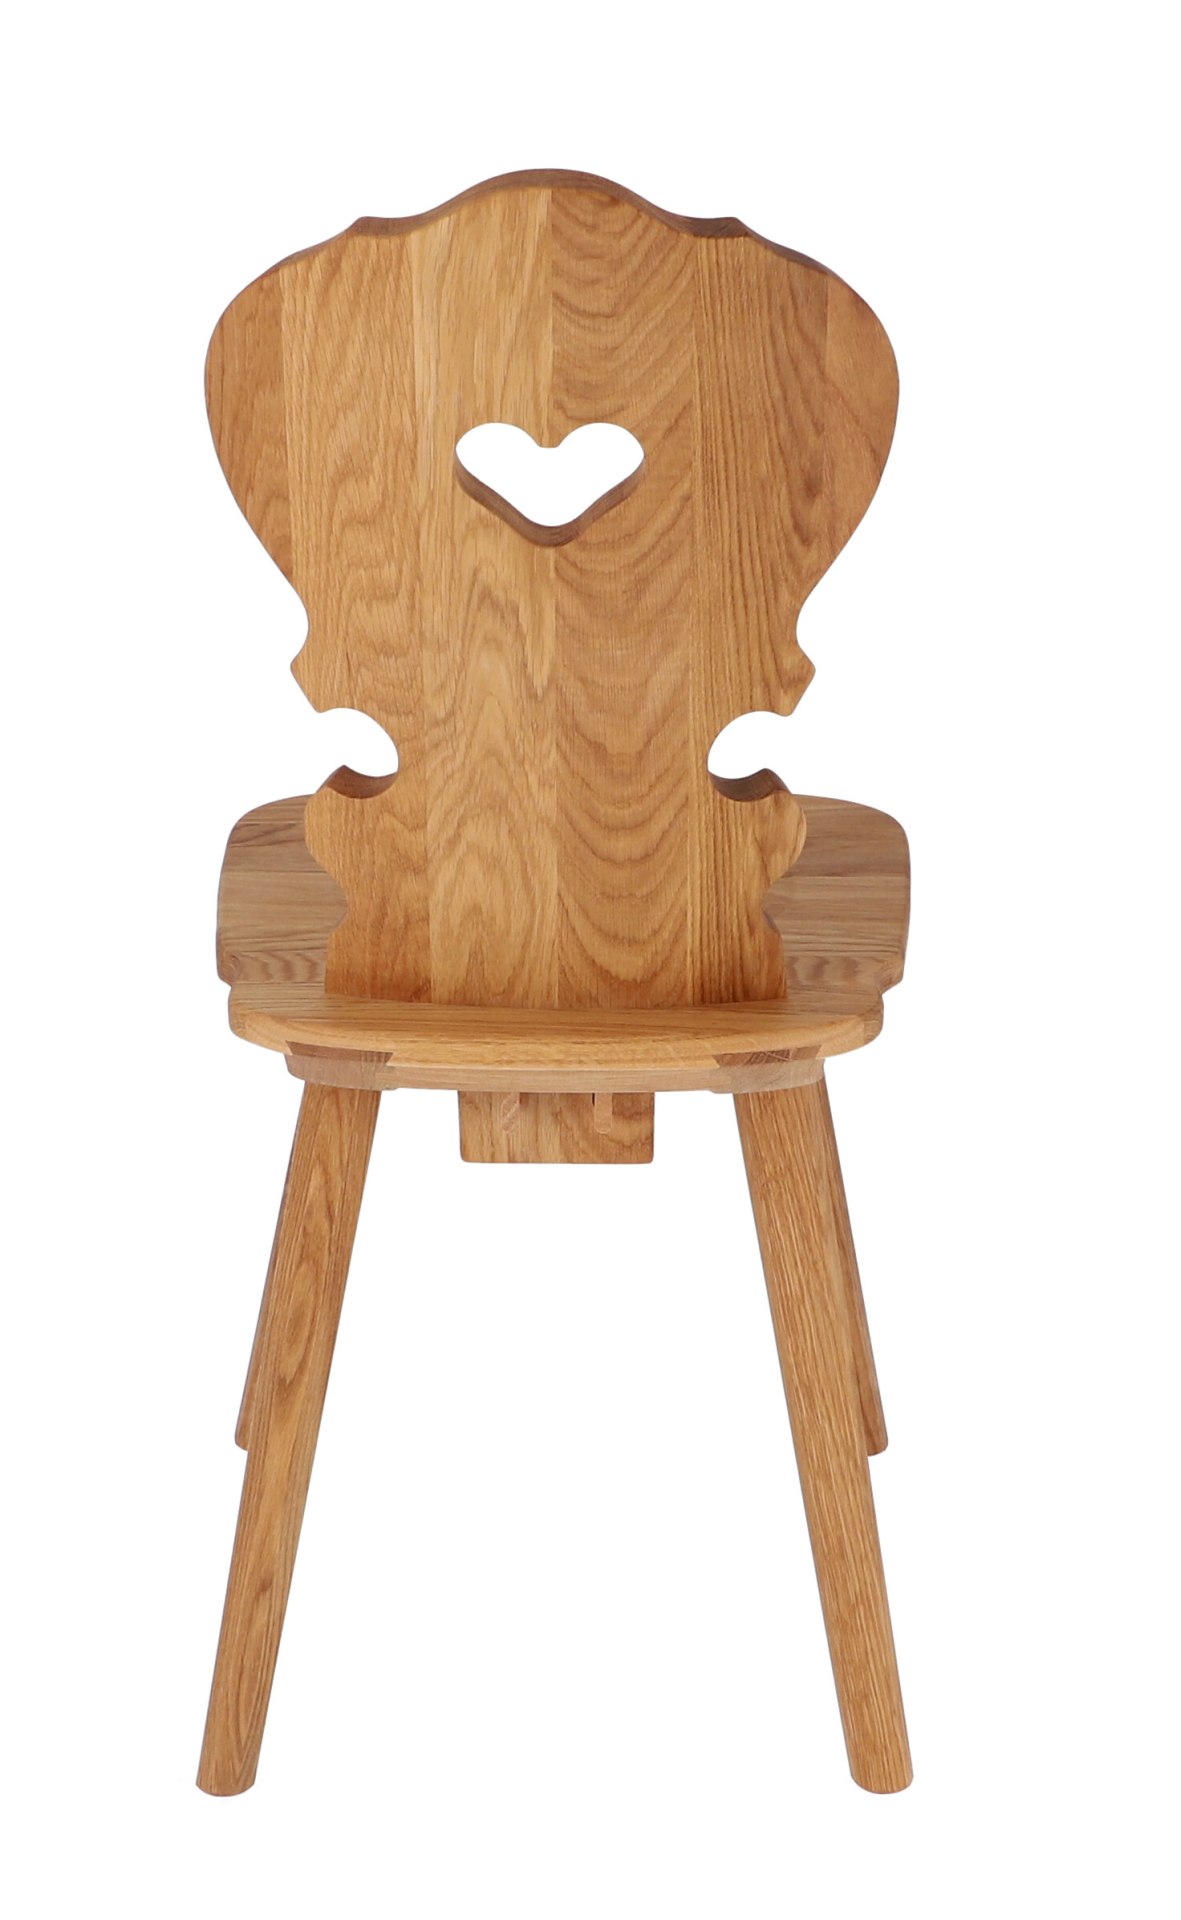 Der Stuhl Vienna ist ein absoluter Klassiker. Gefertigt wurde er aus Buchenholz und ist ein Produkt der Marke Jan Kurtz. Der Stuhl besitzt eine Natur Farbe.